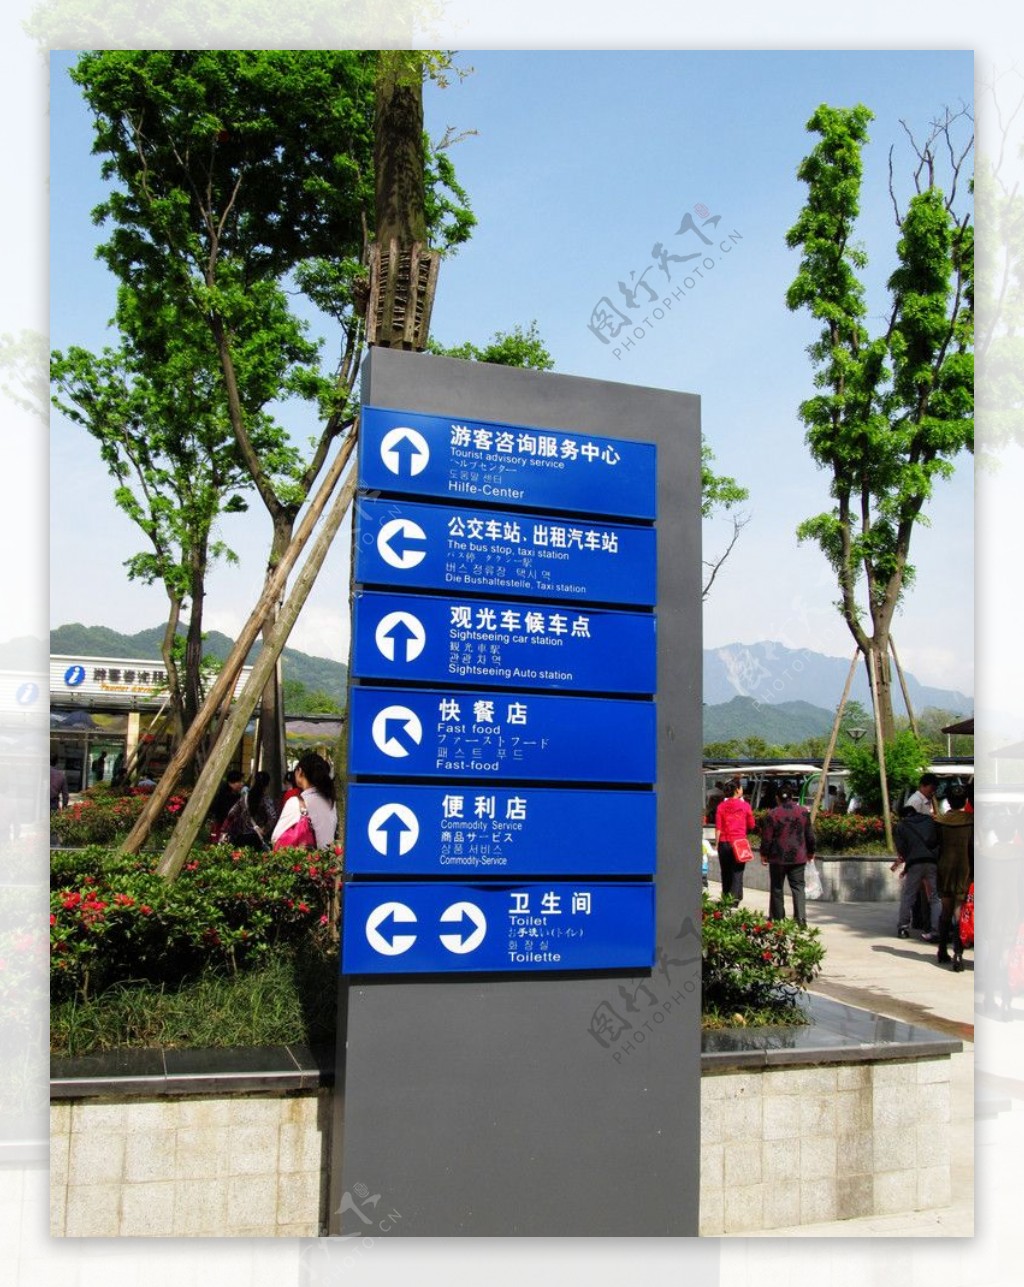 青城山快铁站指示牌图片